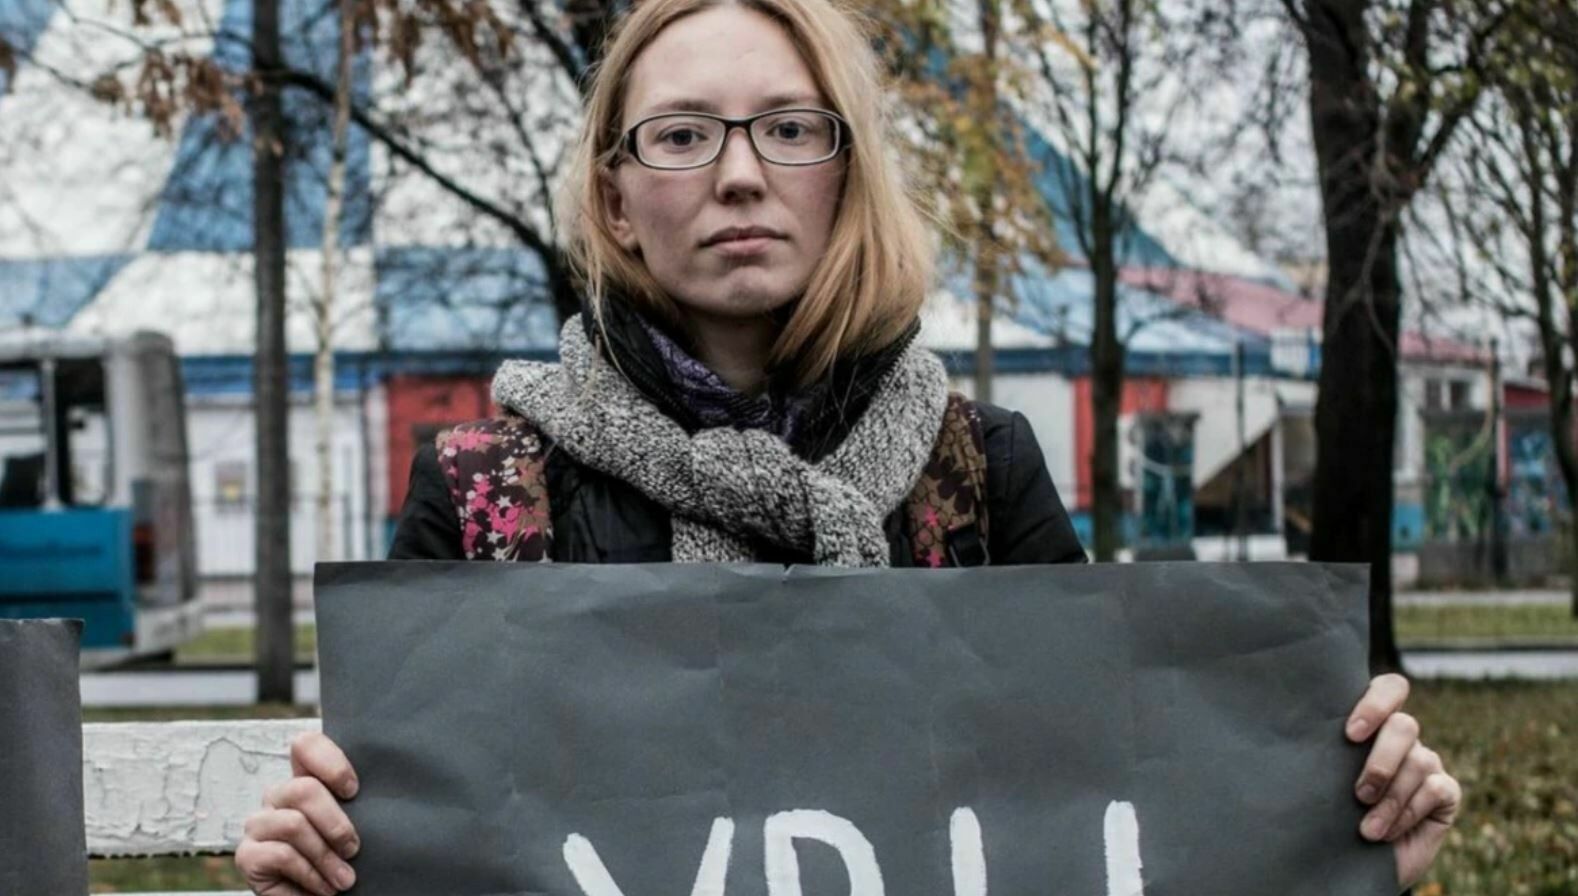 Активистка Апахончич не смогла оспорить внесение ее фамилии в список иноагентов